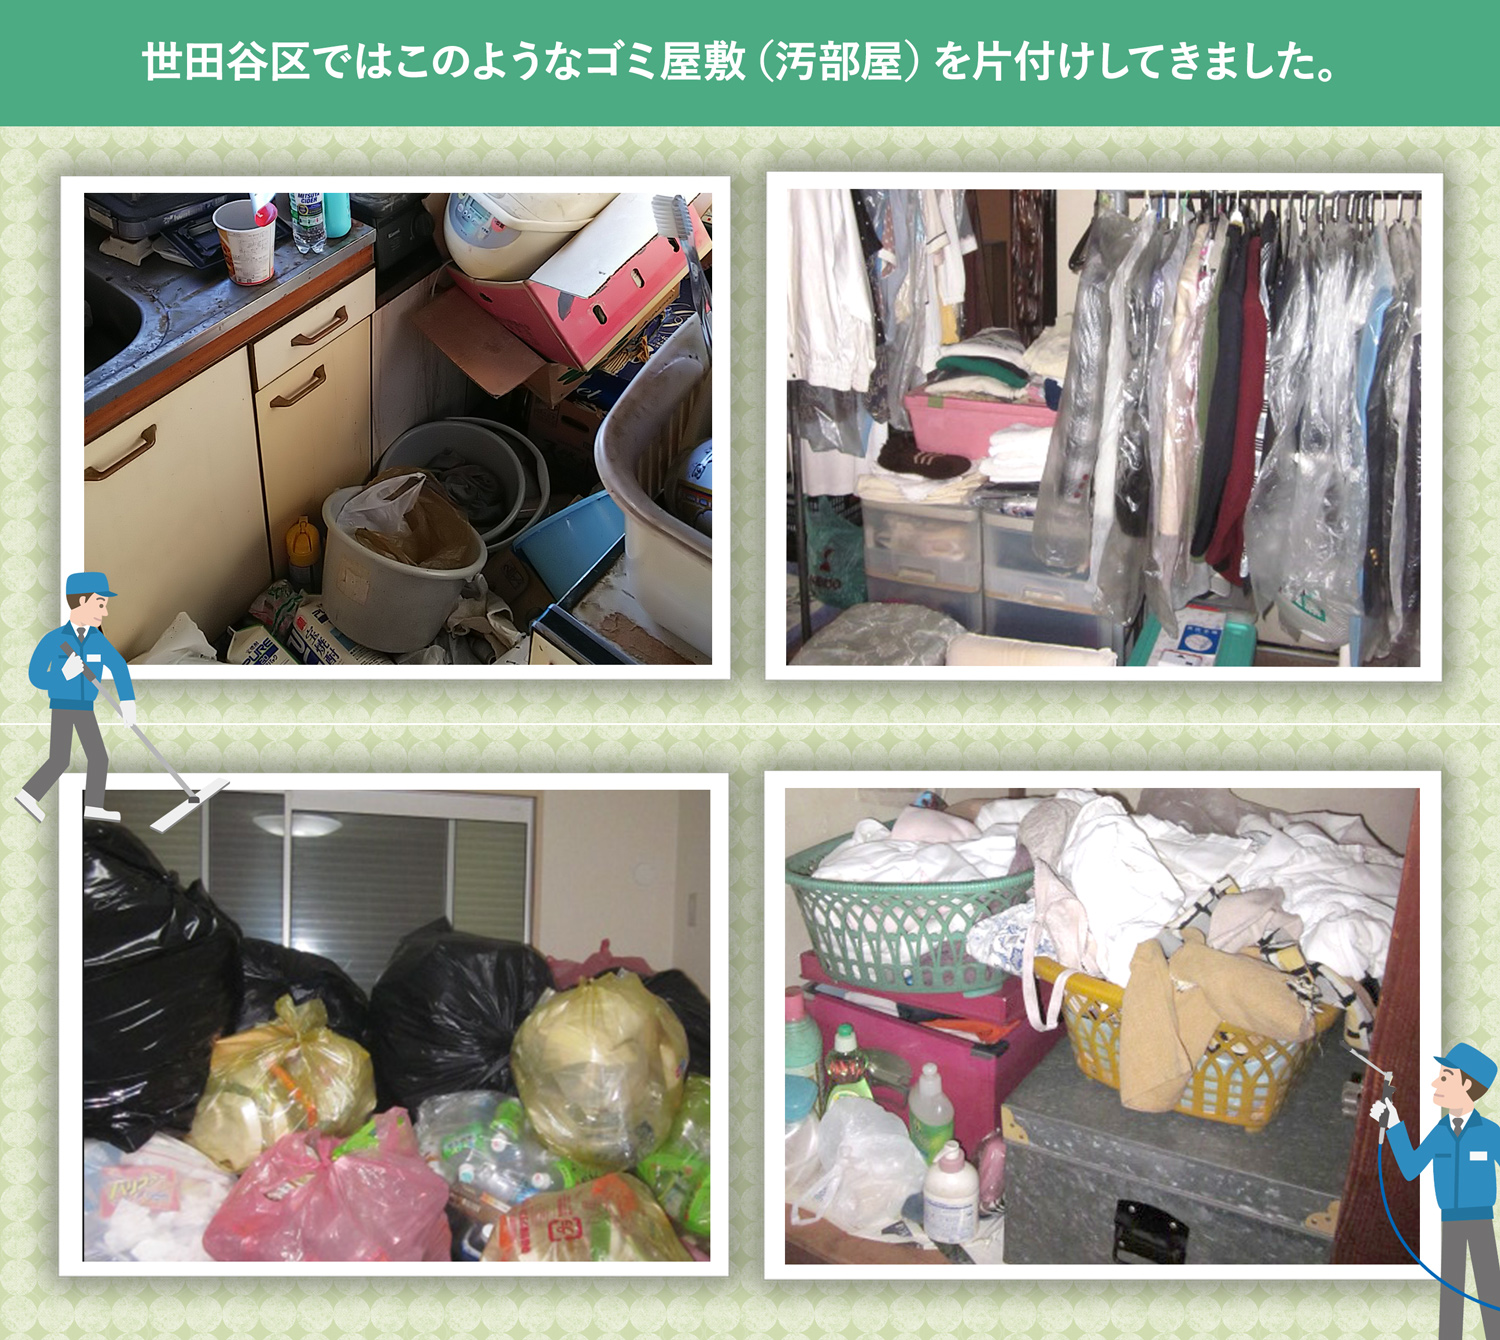 世田谷区で行ったで行ったごみ屋敷・汚部屋の片付けの一例